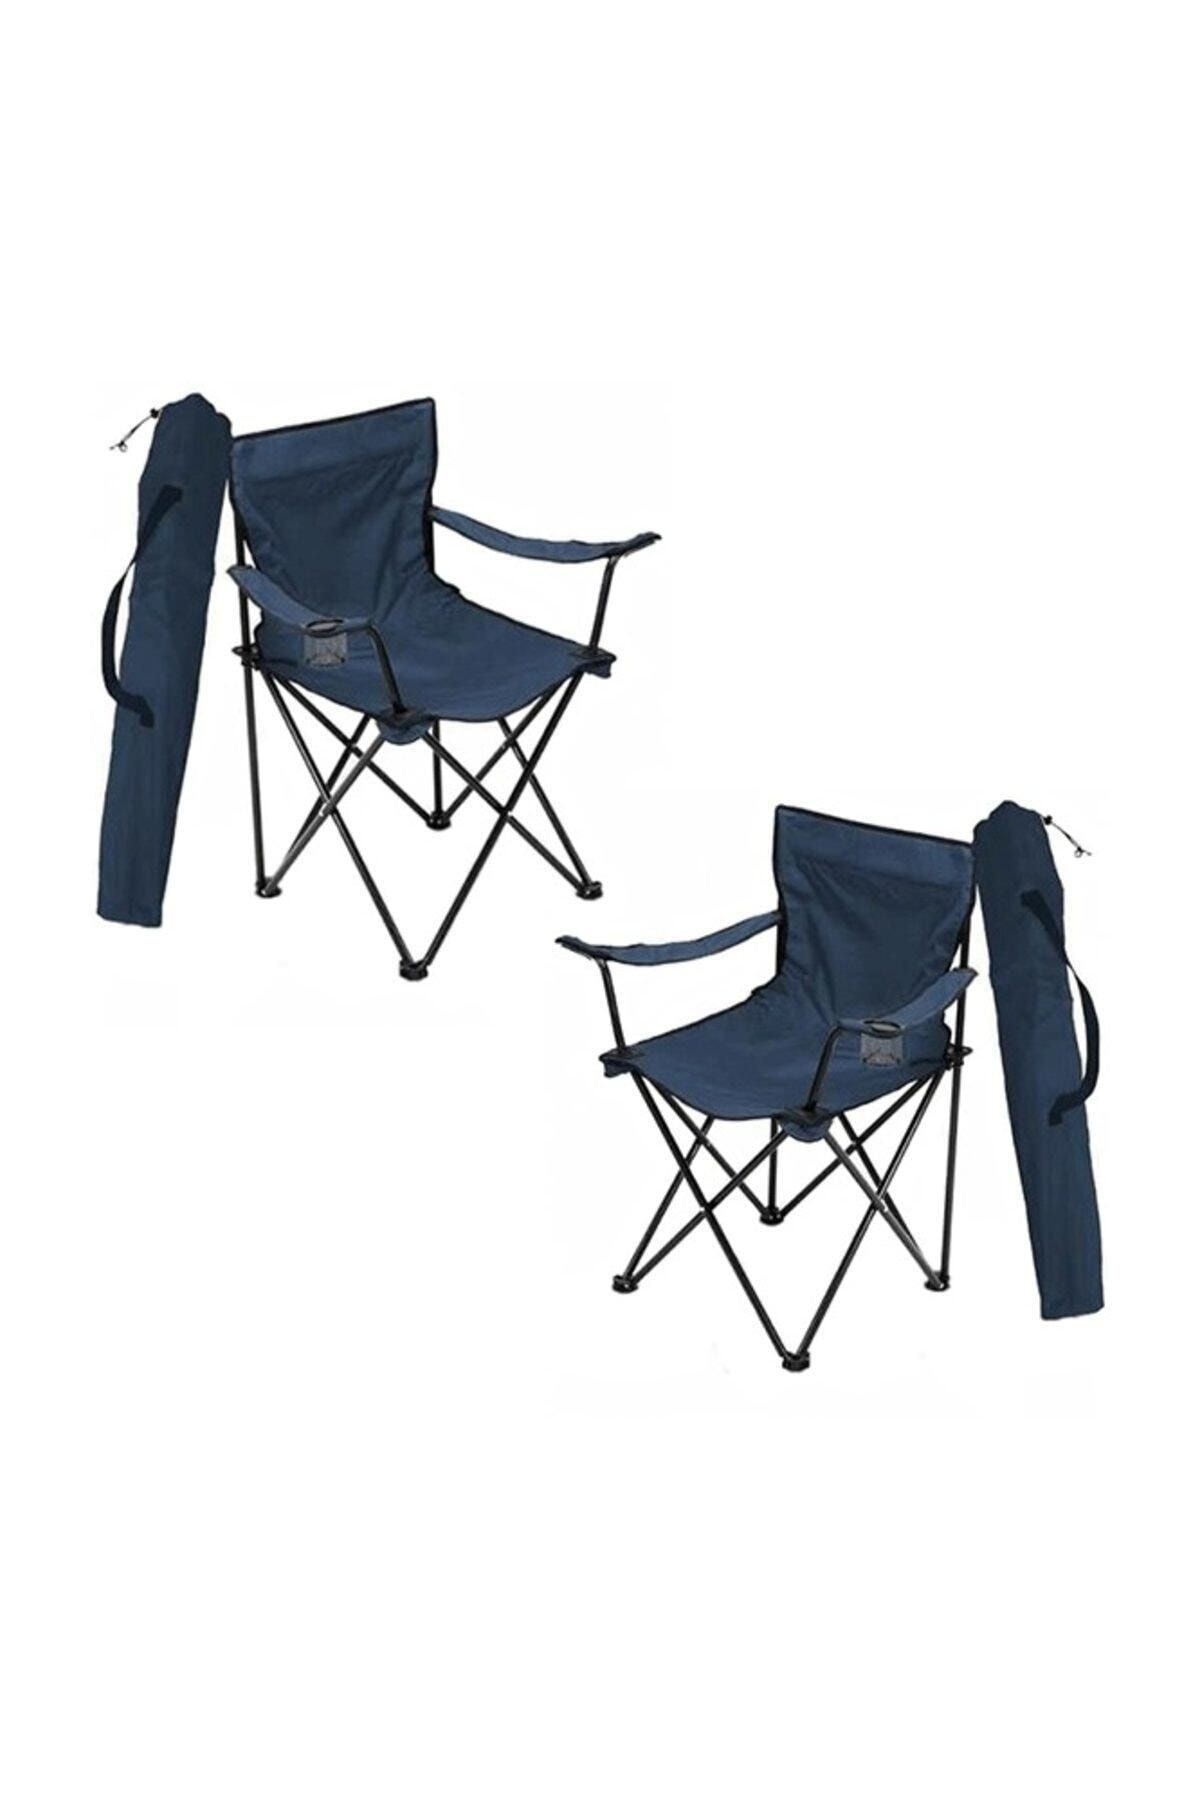 2 Adet Kamp Sandalyesi Katlanır Sandalye Bahçe Koltuğu Piknik Plaj Balkon Sandalyesi Mavi